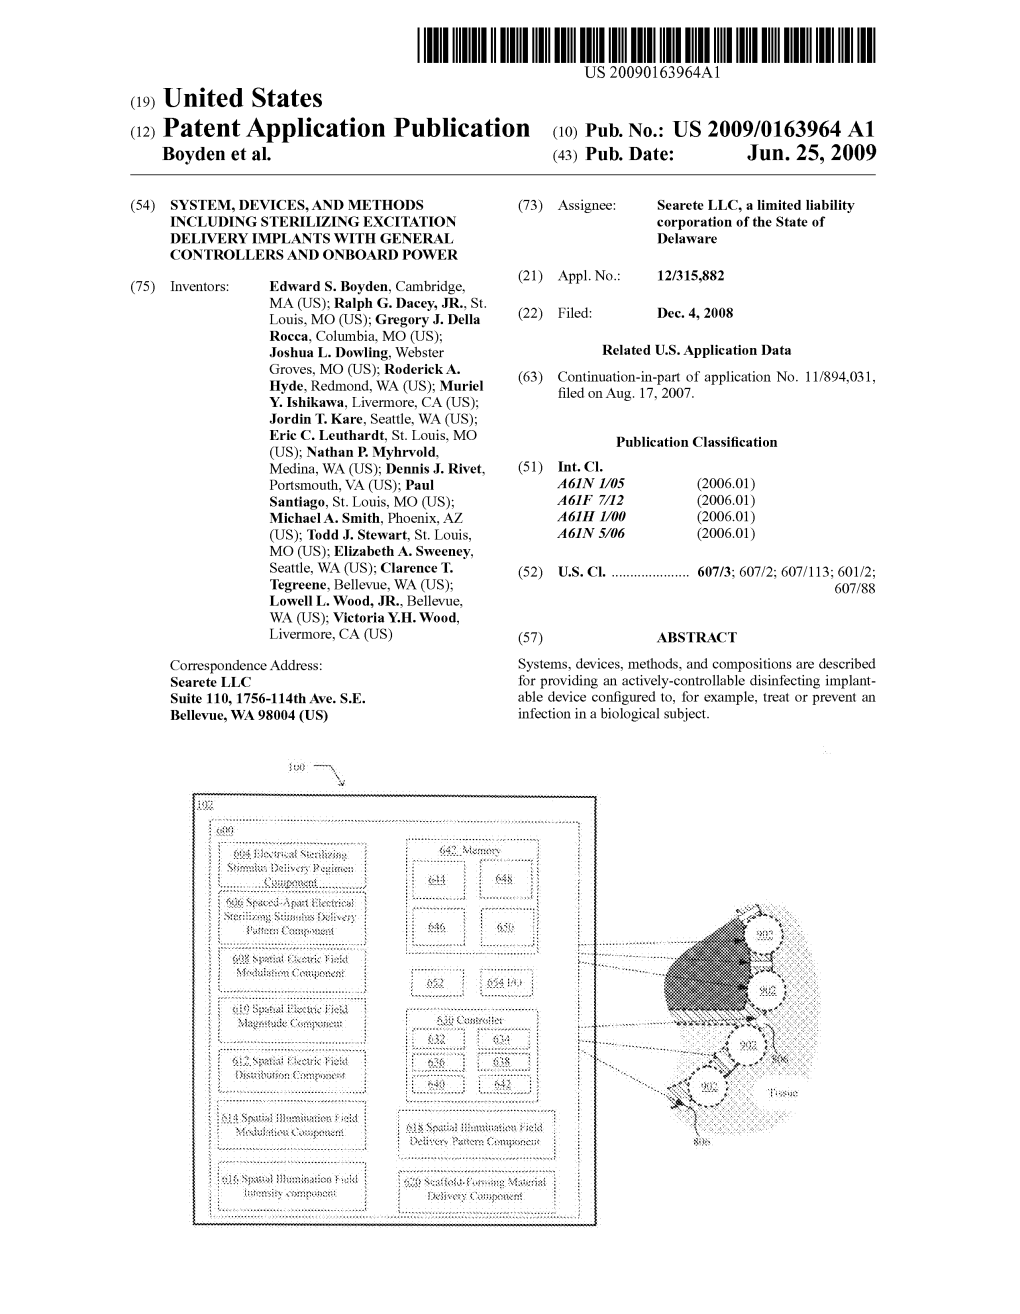 (12) Patent Application Publication (10) Pub. No.: US 2009/0163964 A1 Boyden Et Al